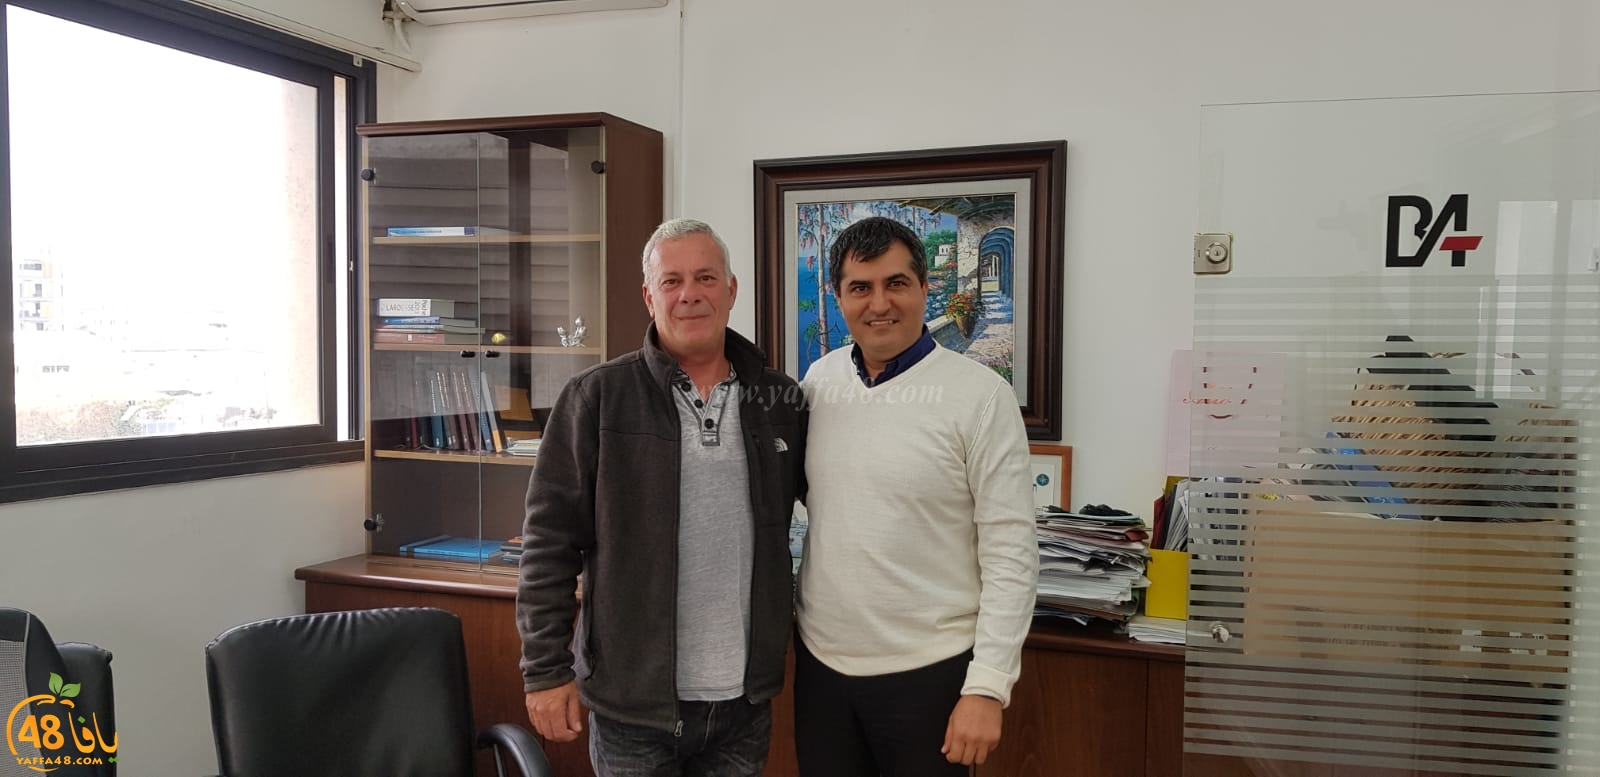  عضو البلدية أمير بدران يبحث مع مدير ميناء يافا أوضاع الصيادين 